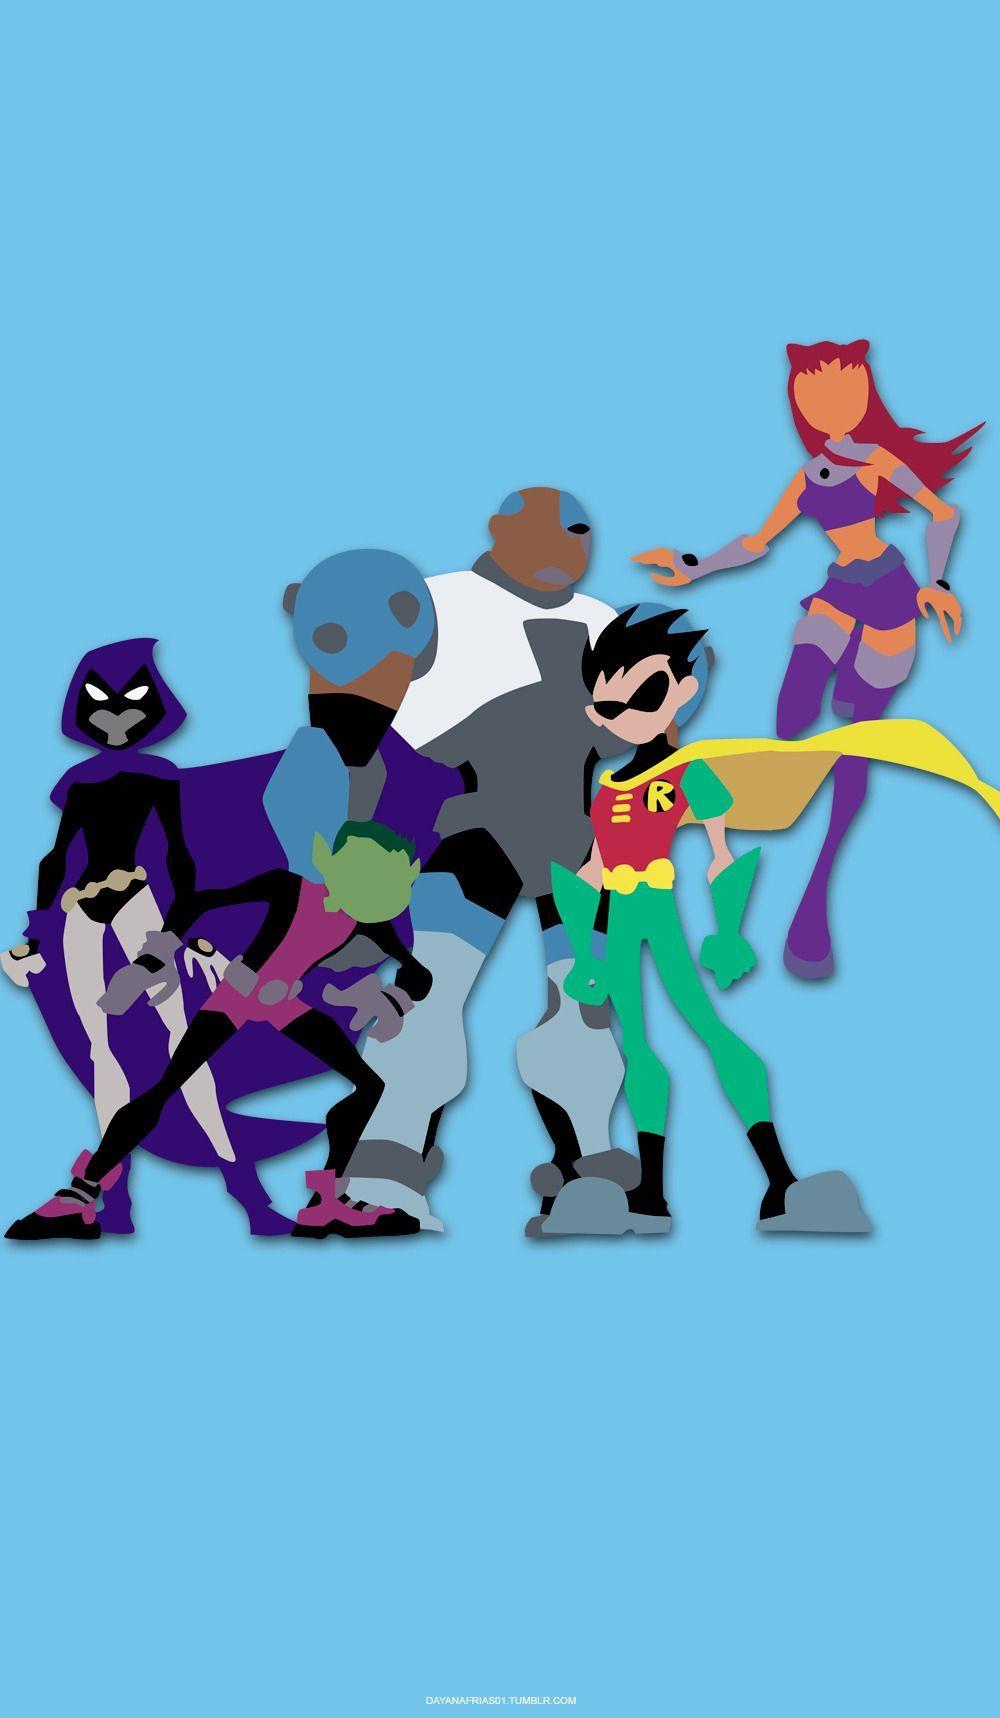 Teen Titans Wallpapers - Top Free Teen